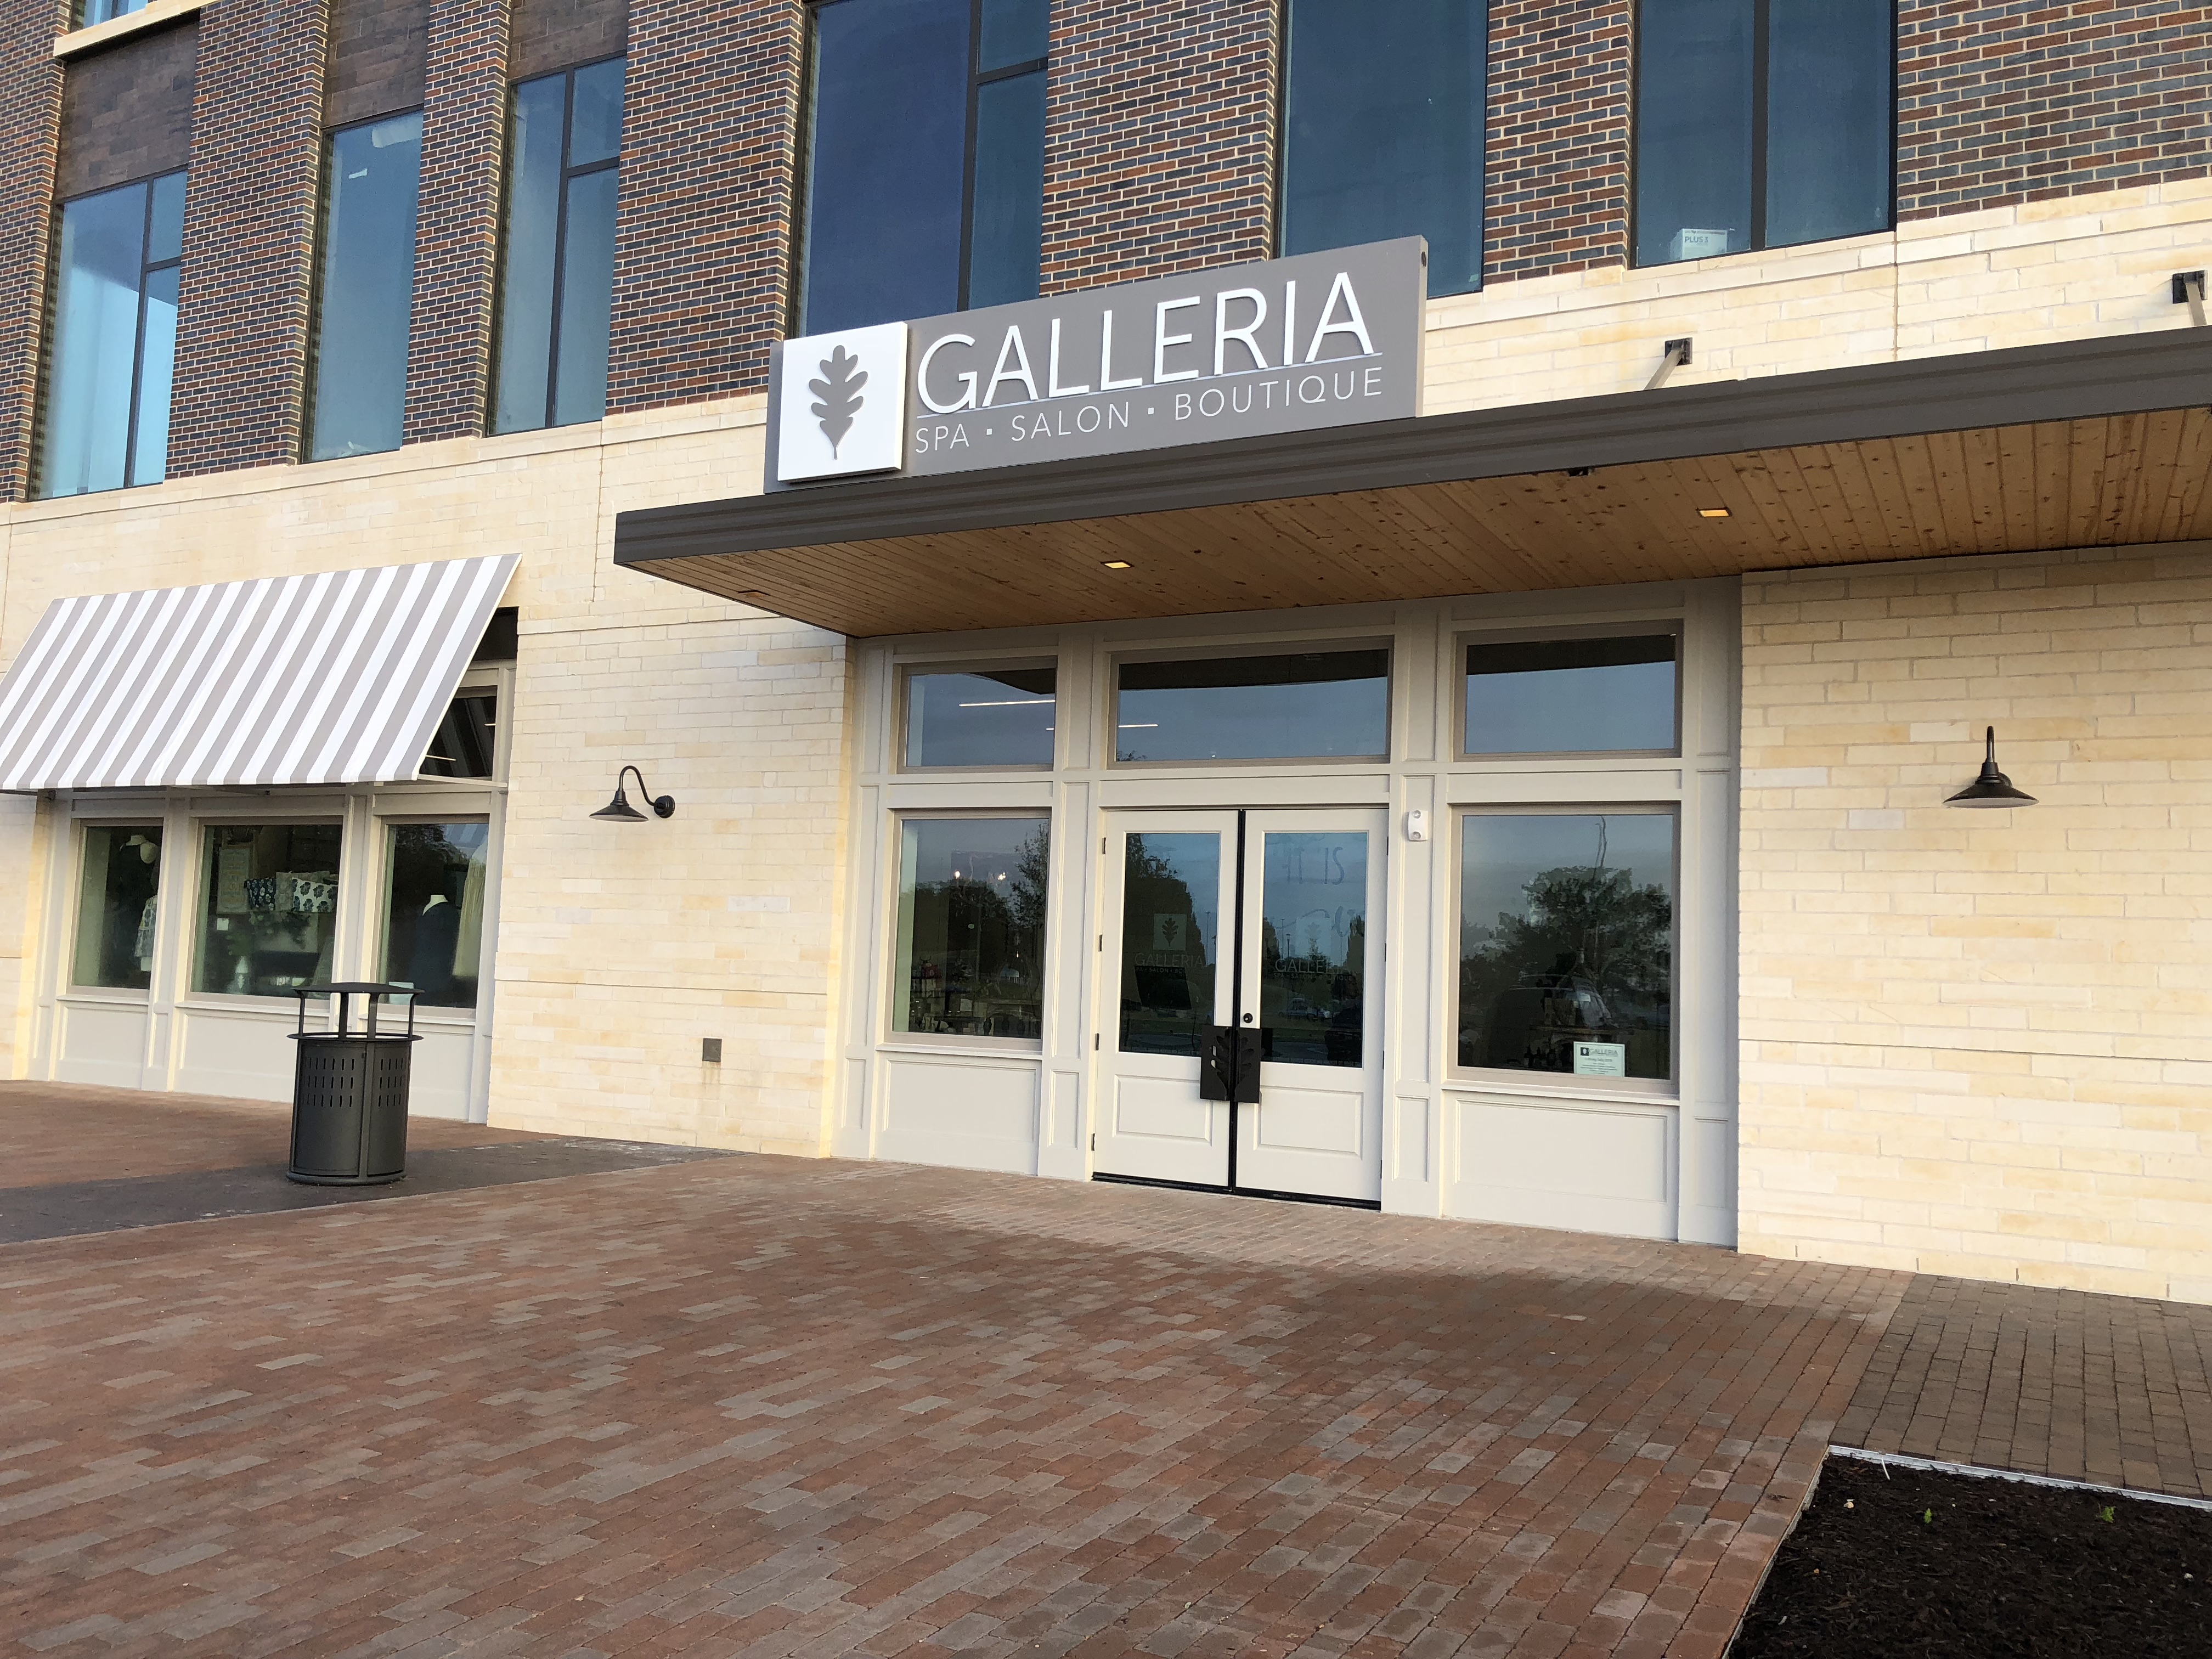 Galleria Spa Salon Boutique set to open at Century Square